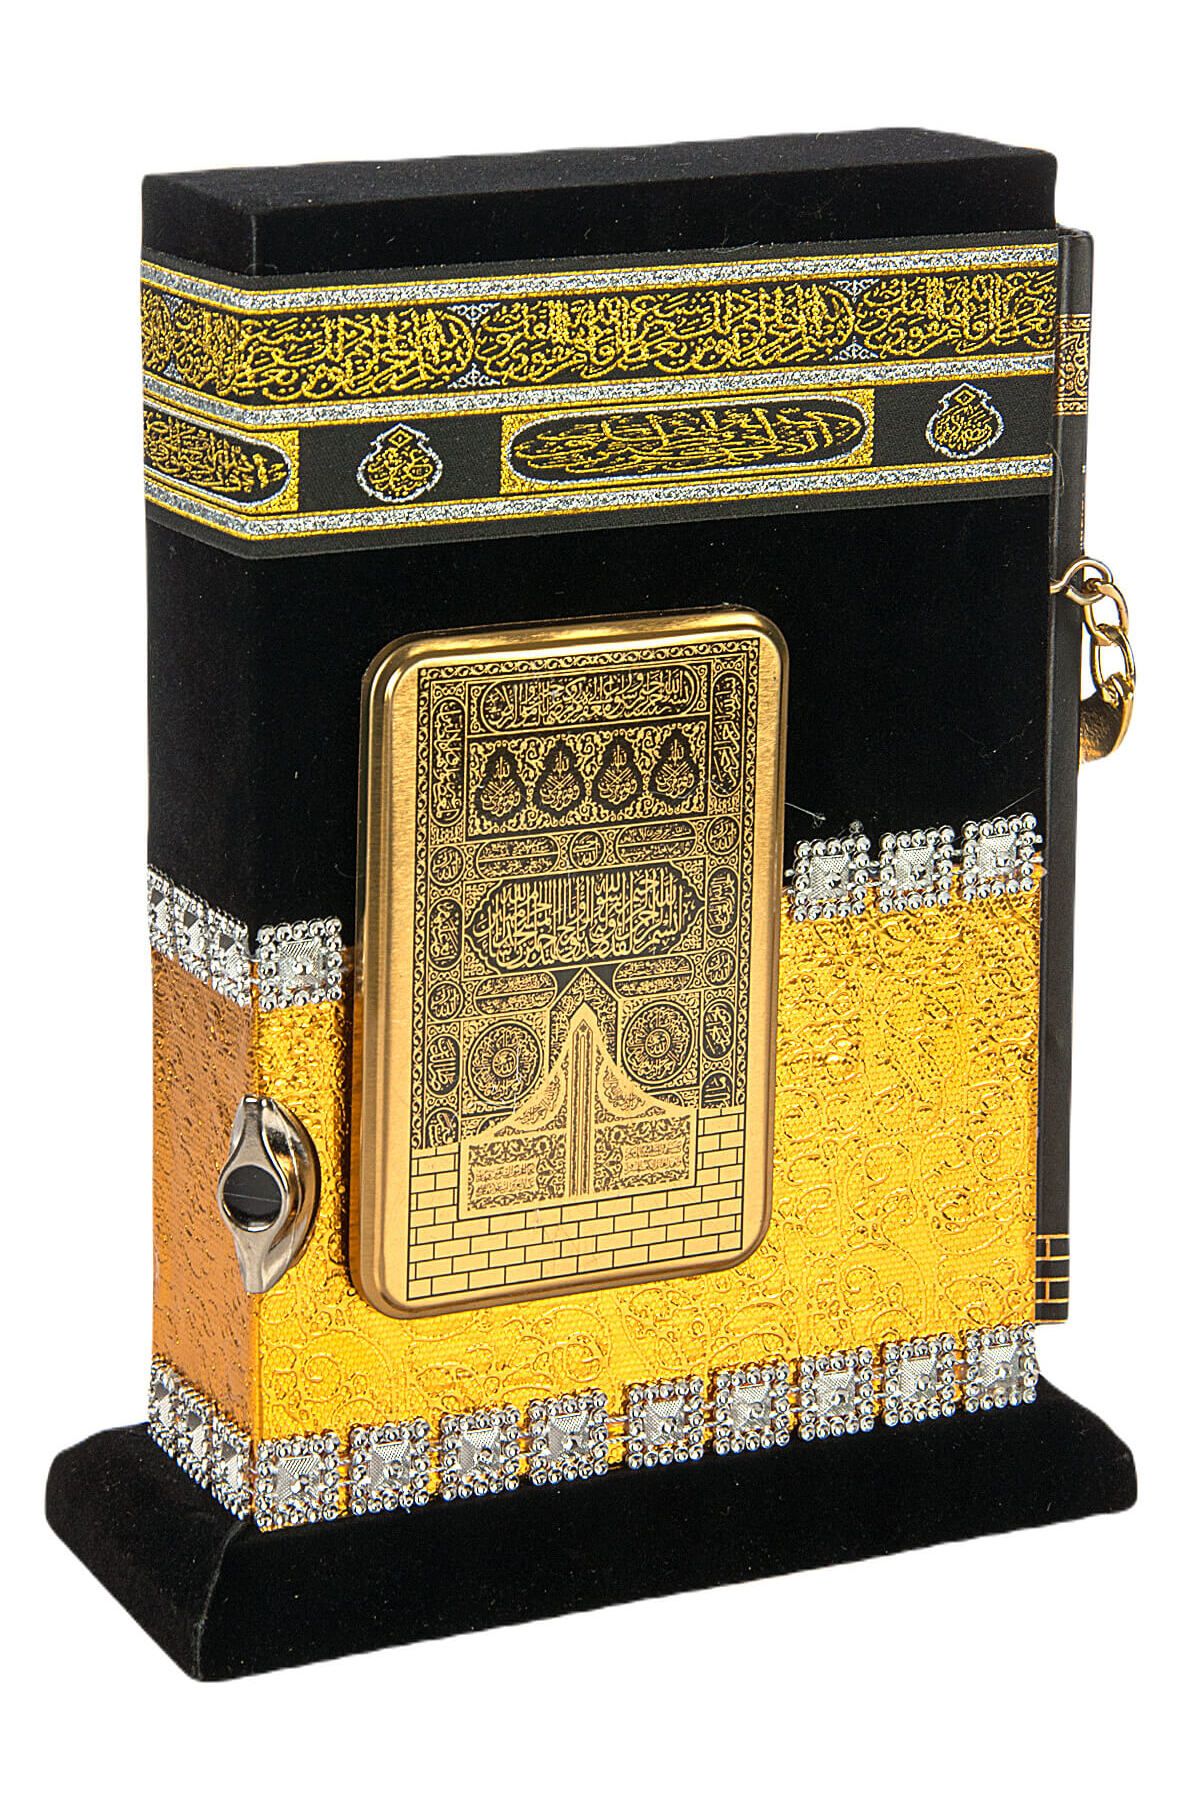 Ayfa Publications Священный Коран с каменной моделью Каабы - мальчик Хафиз - золото 4897654301874